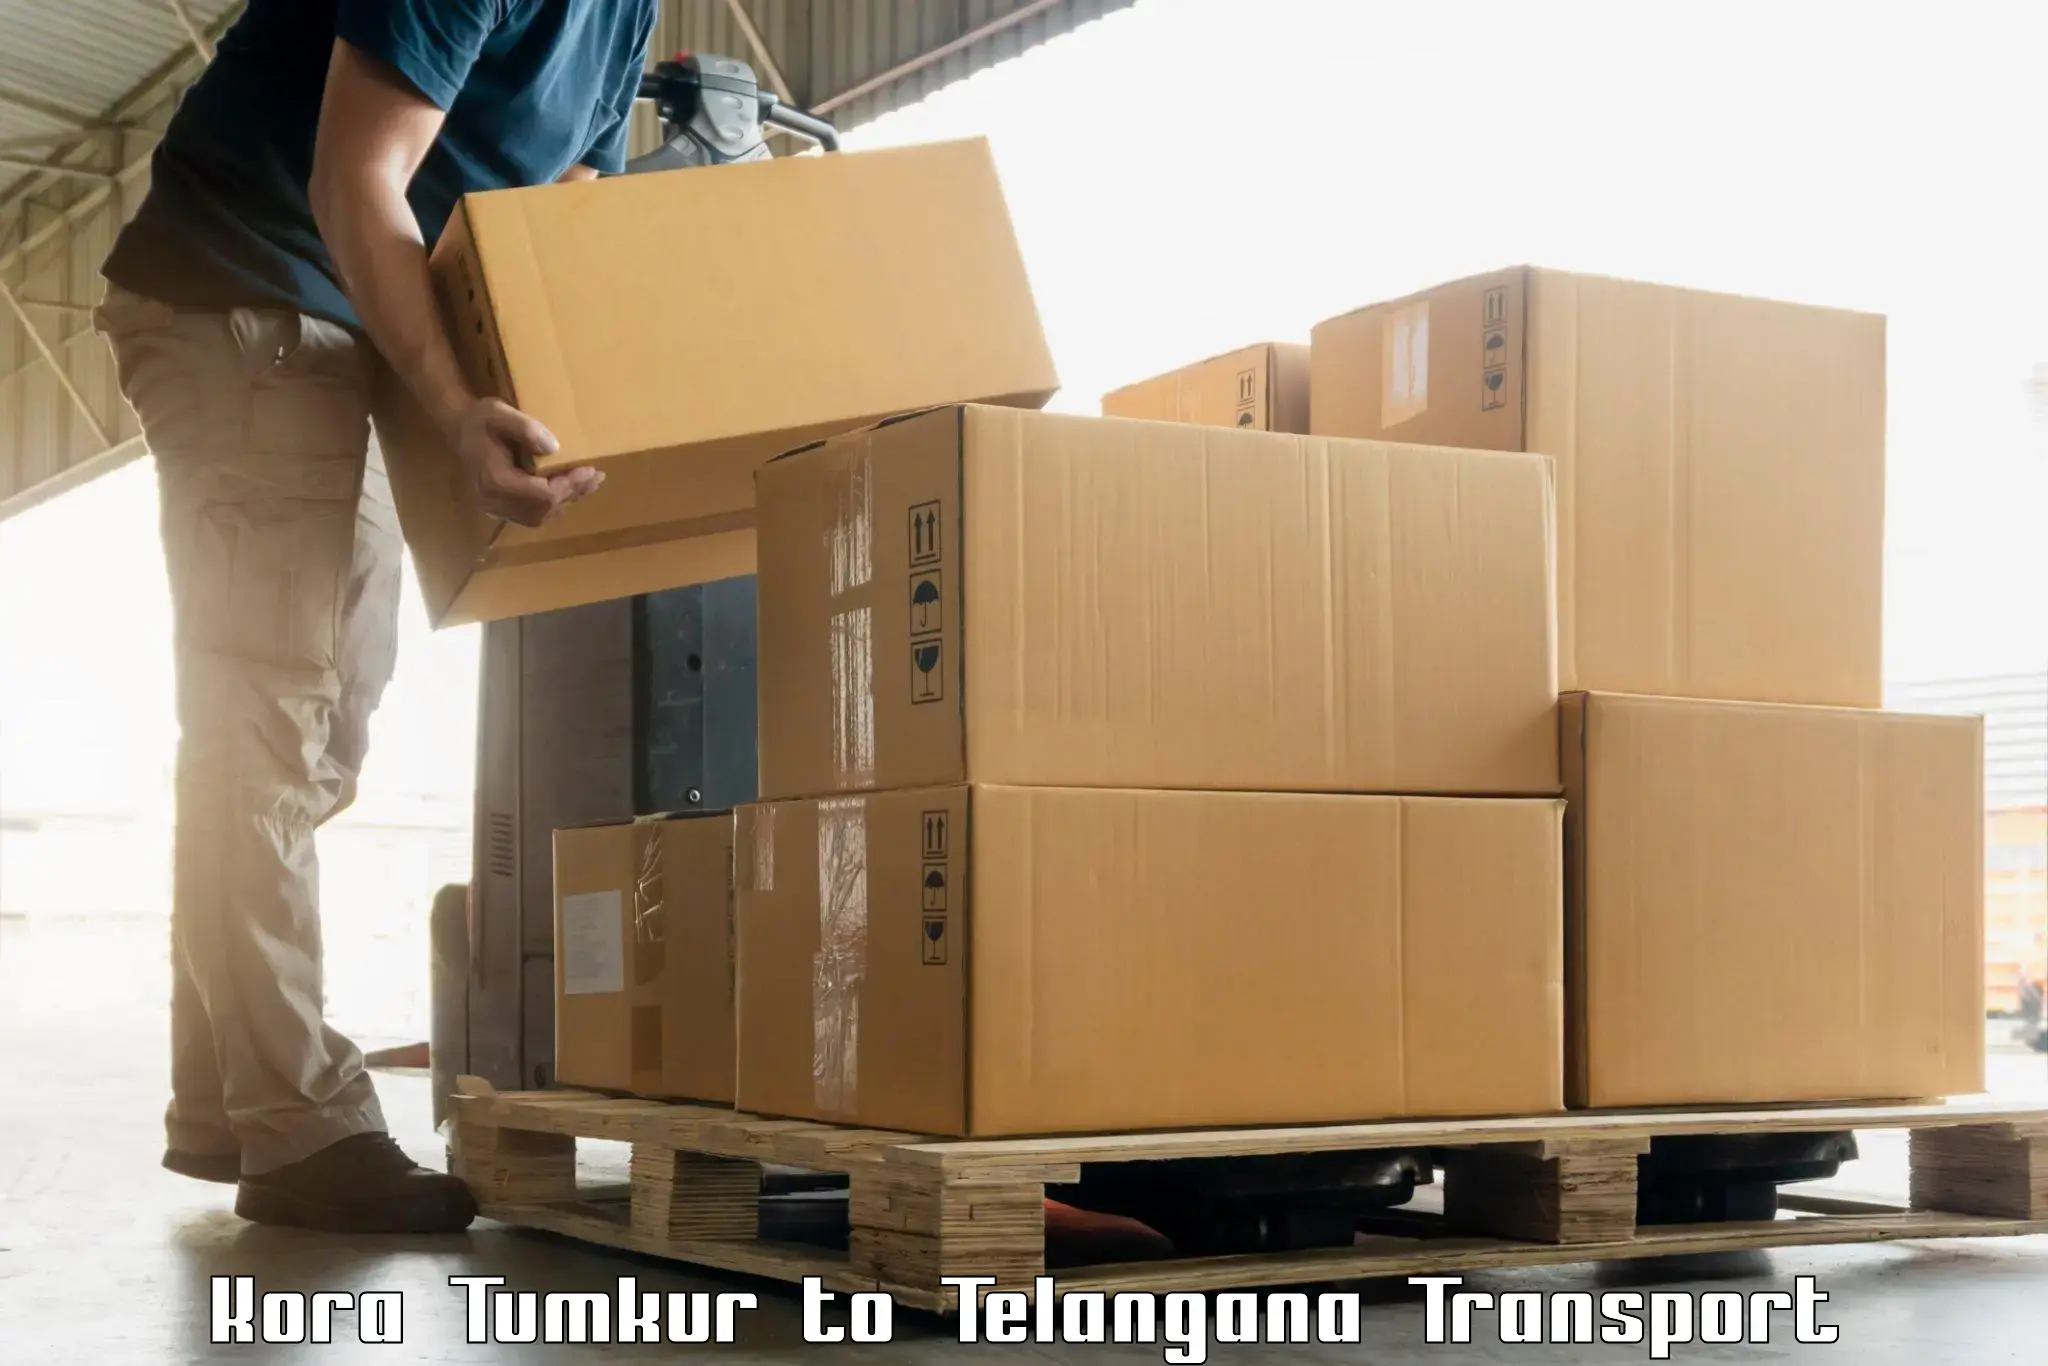 Air cargo transport services Kora Tumkur to Allapalli